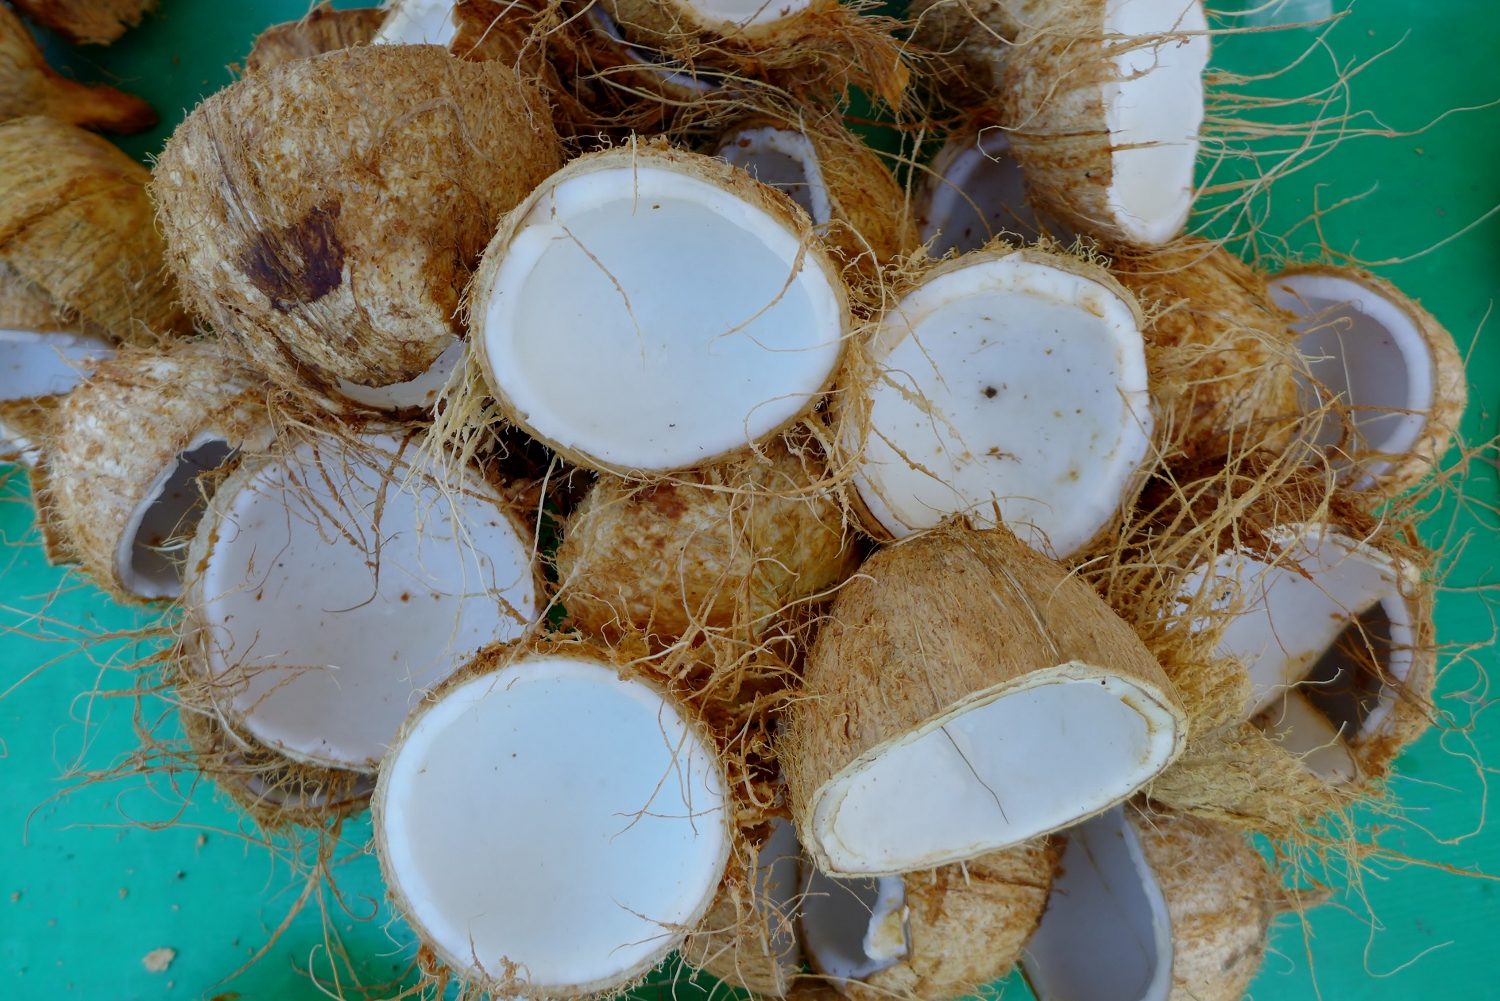 La noix de coco peut aussi se boire en jus, en lait, ou être mangée fraîche directement dans la coque.